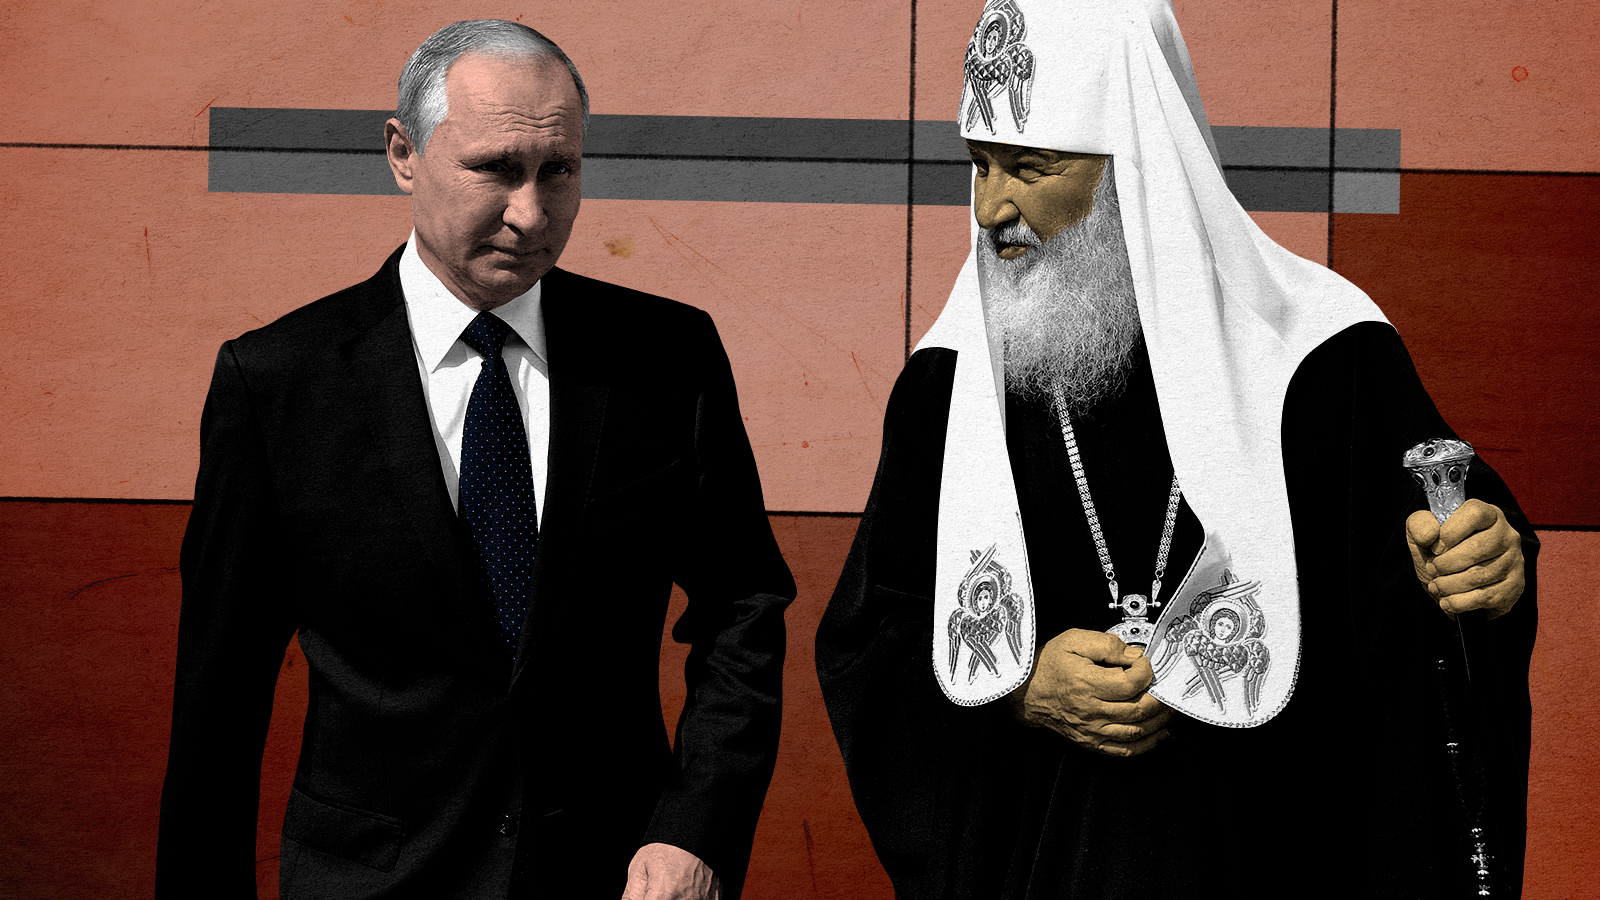 Putin and Kirill.